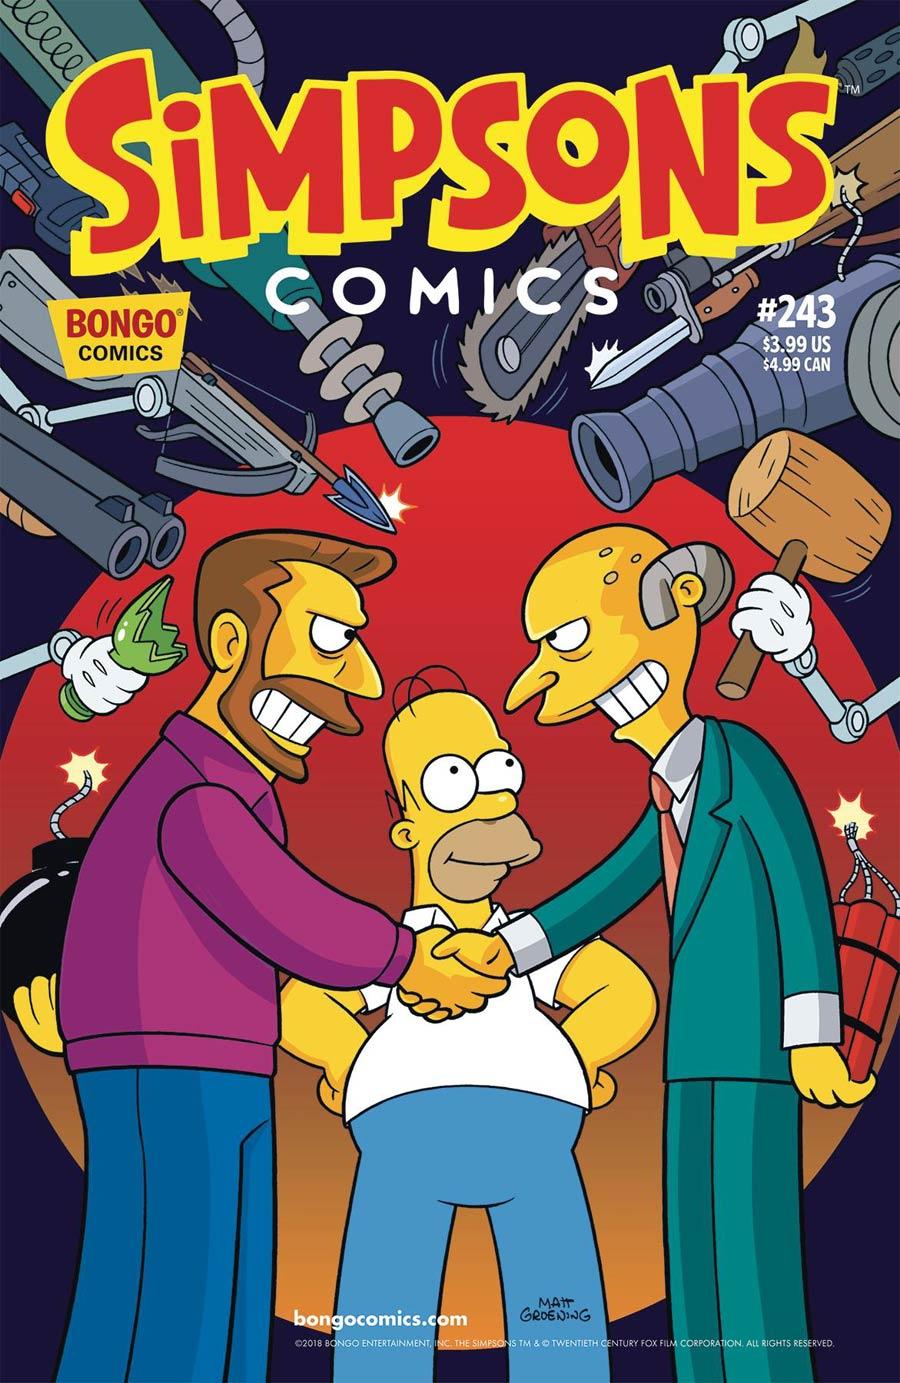 Simpsons Comics Vol. 1 #243